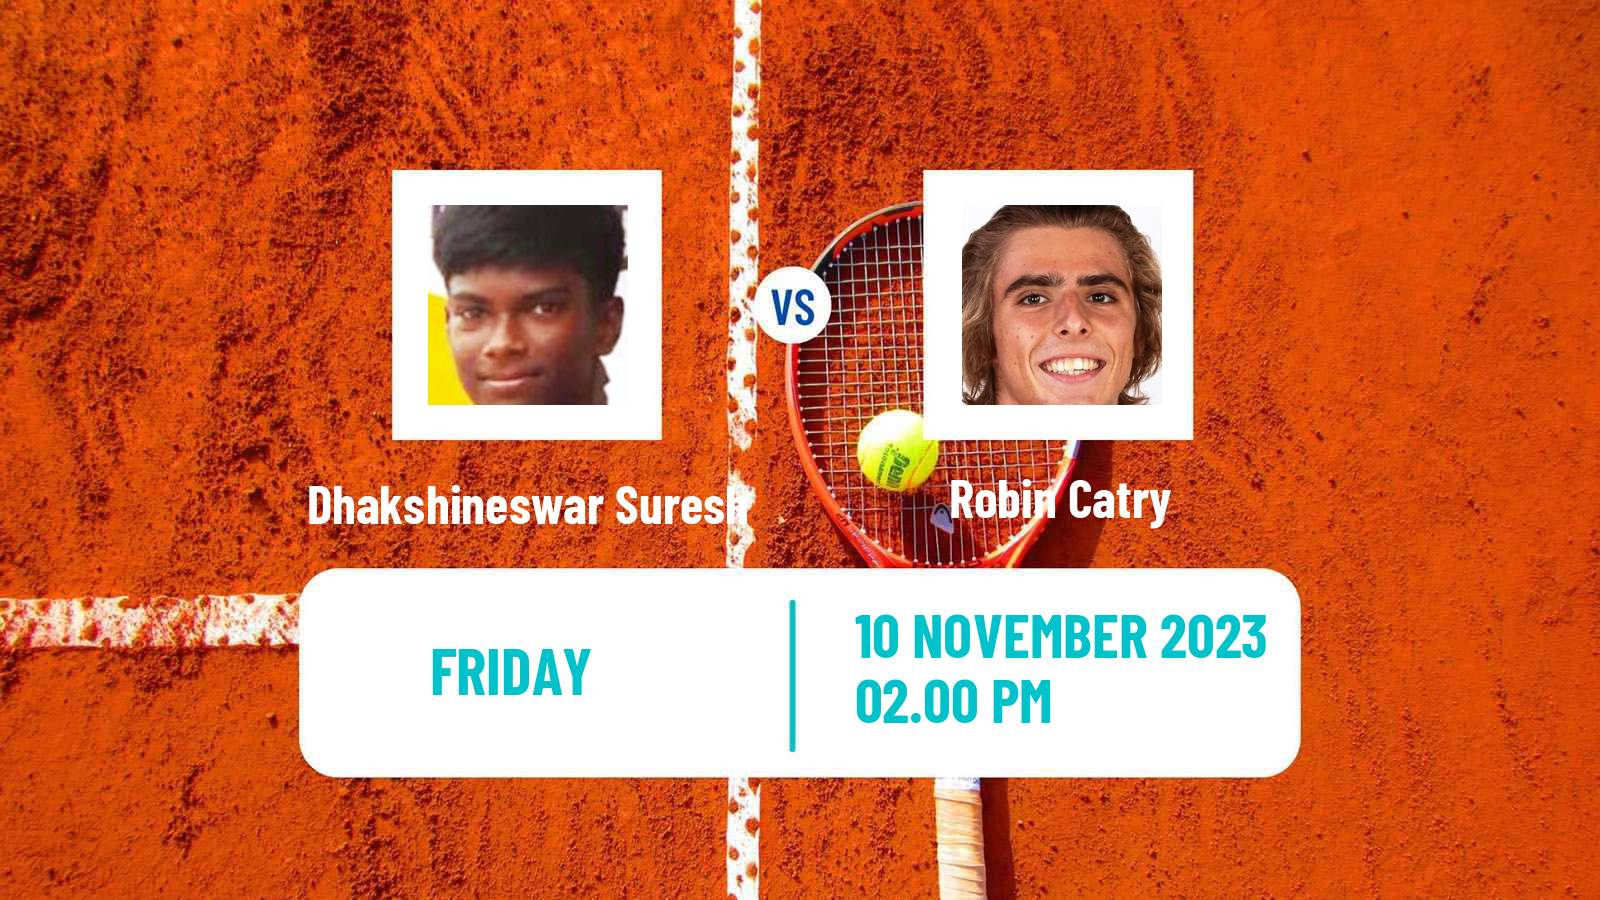 Tennis ITF M15 Winston Salem Nc Men Dhakshineswar Suresh - Robin Catry